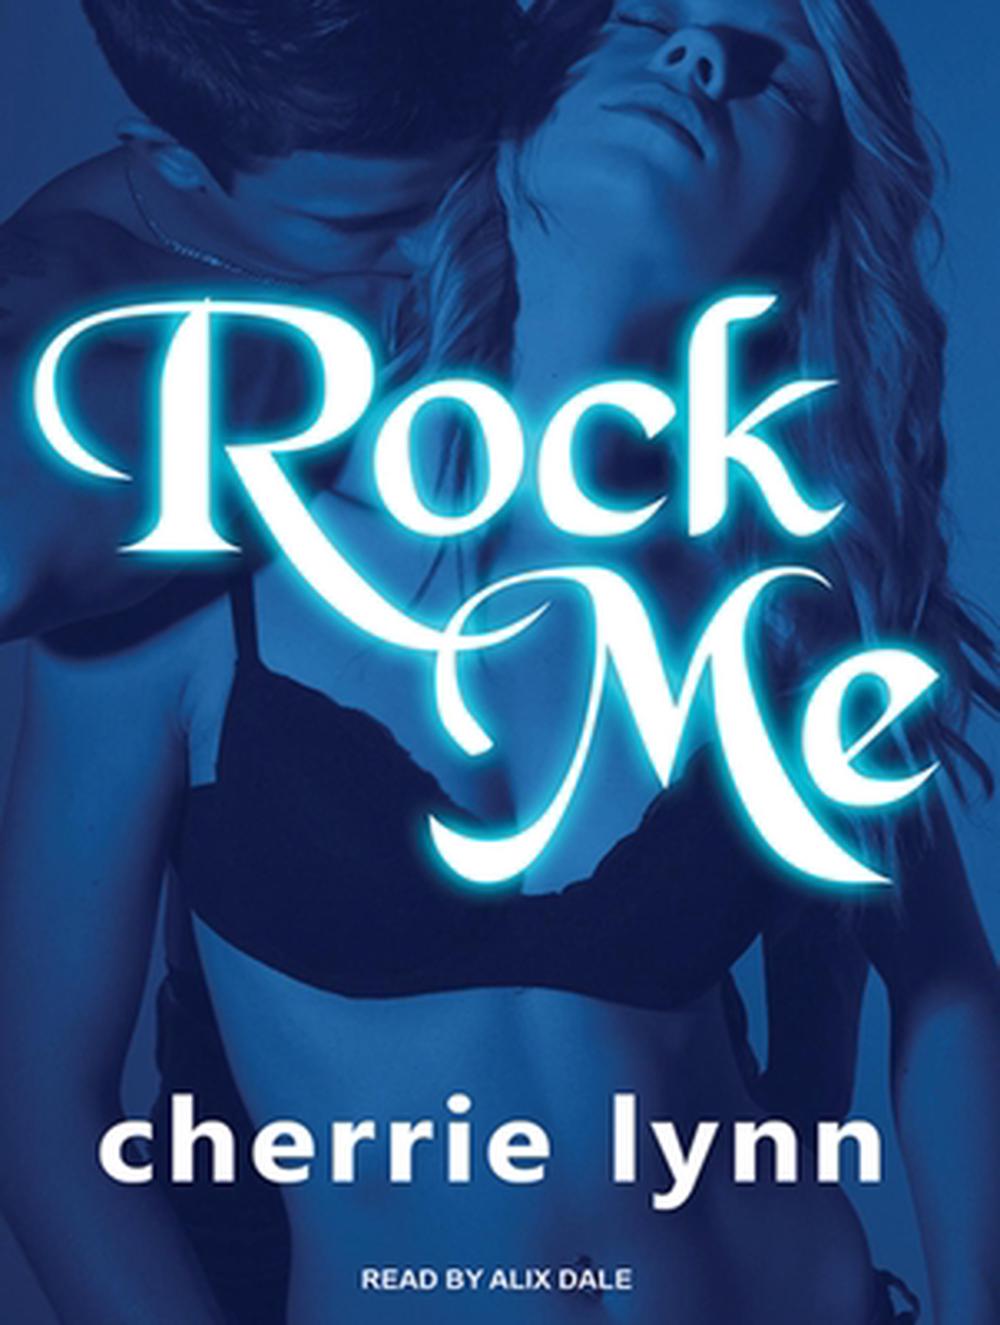 Rock Me by Cherrie Lynn